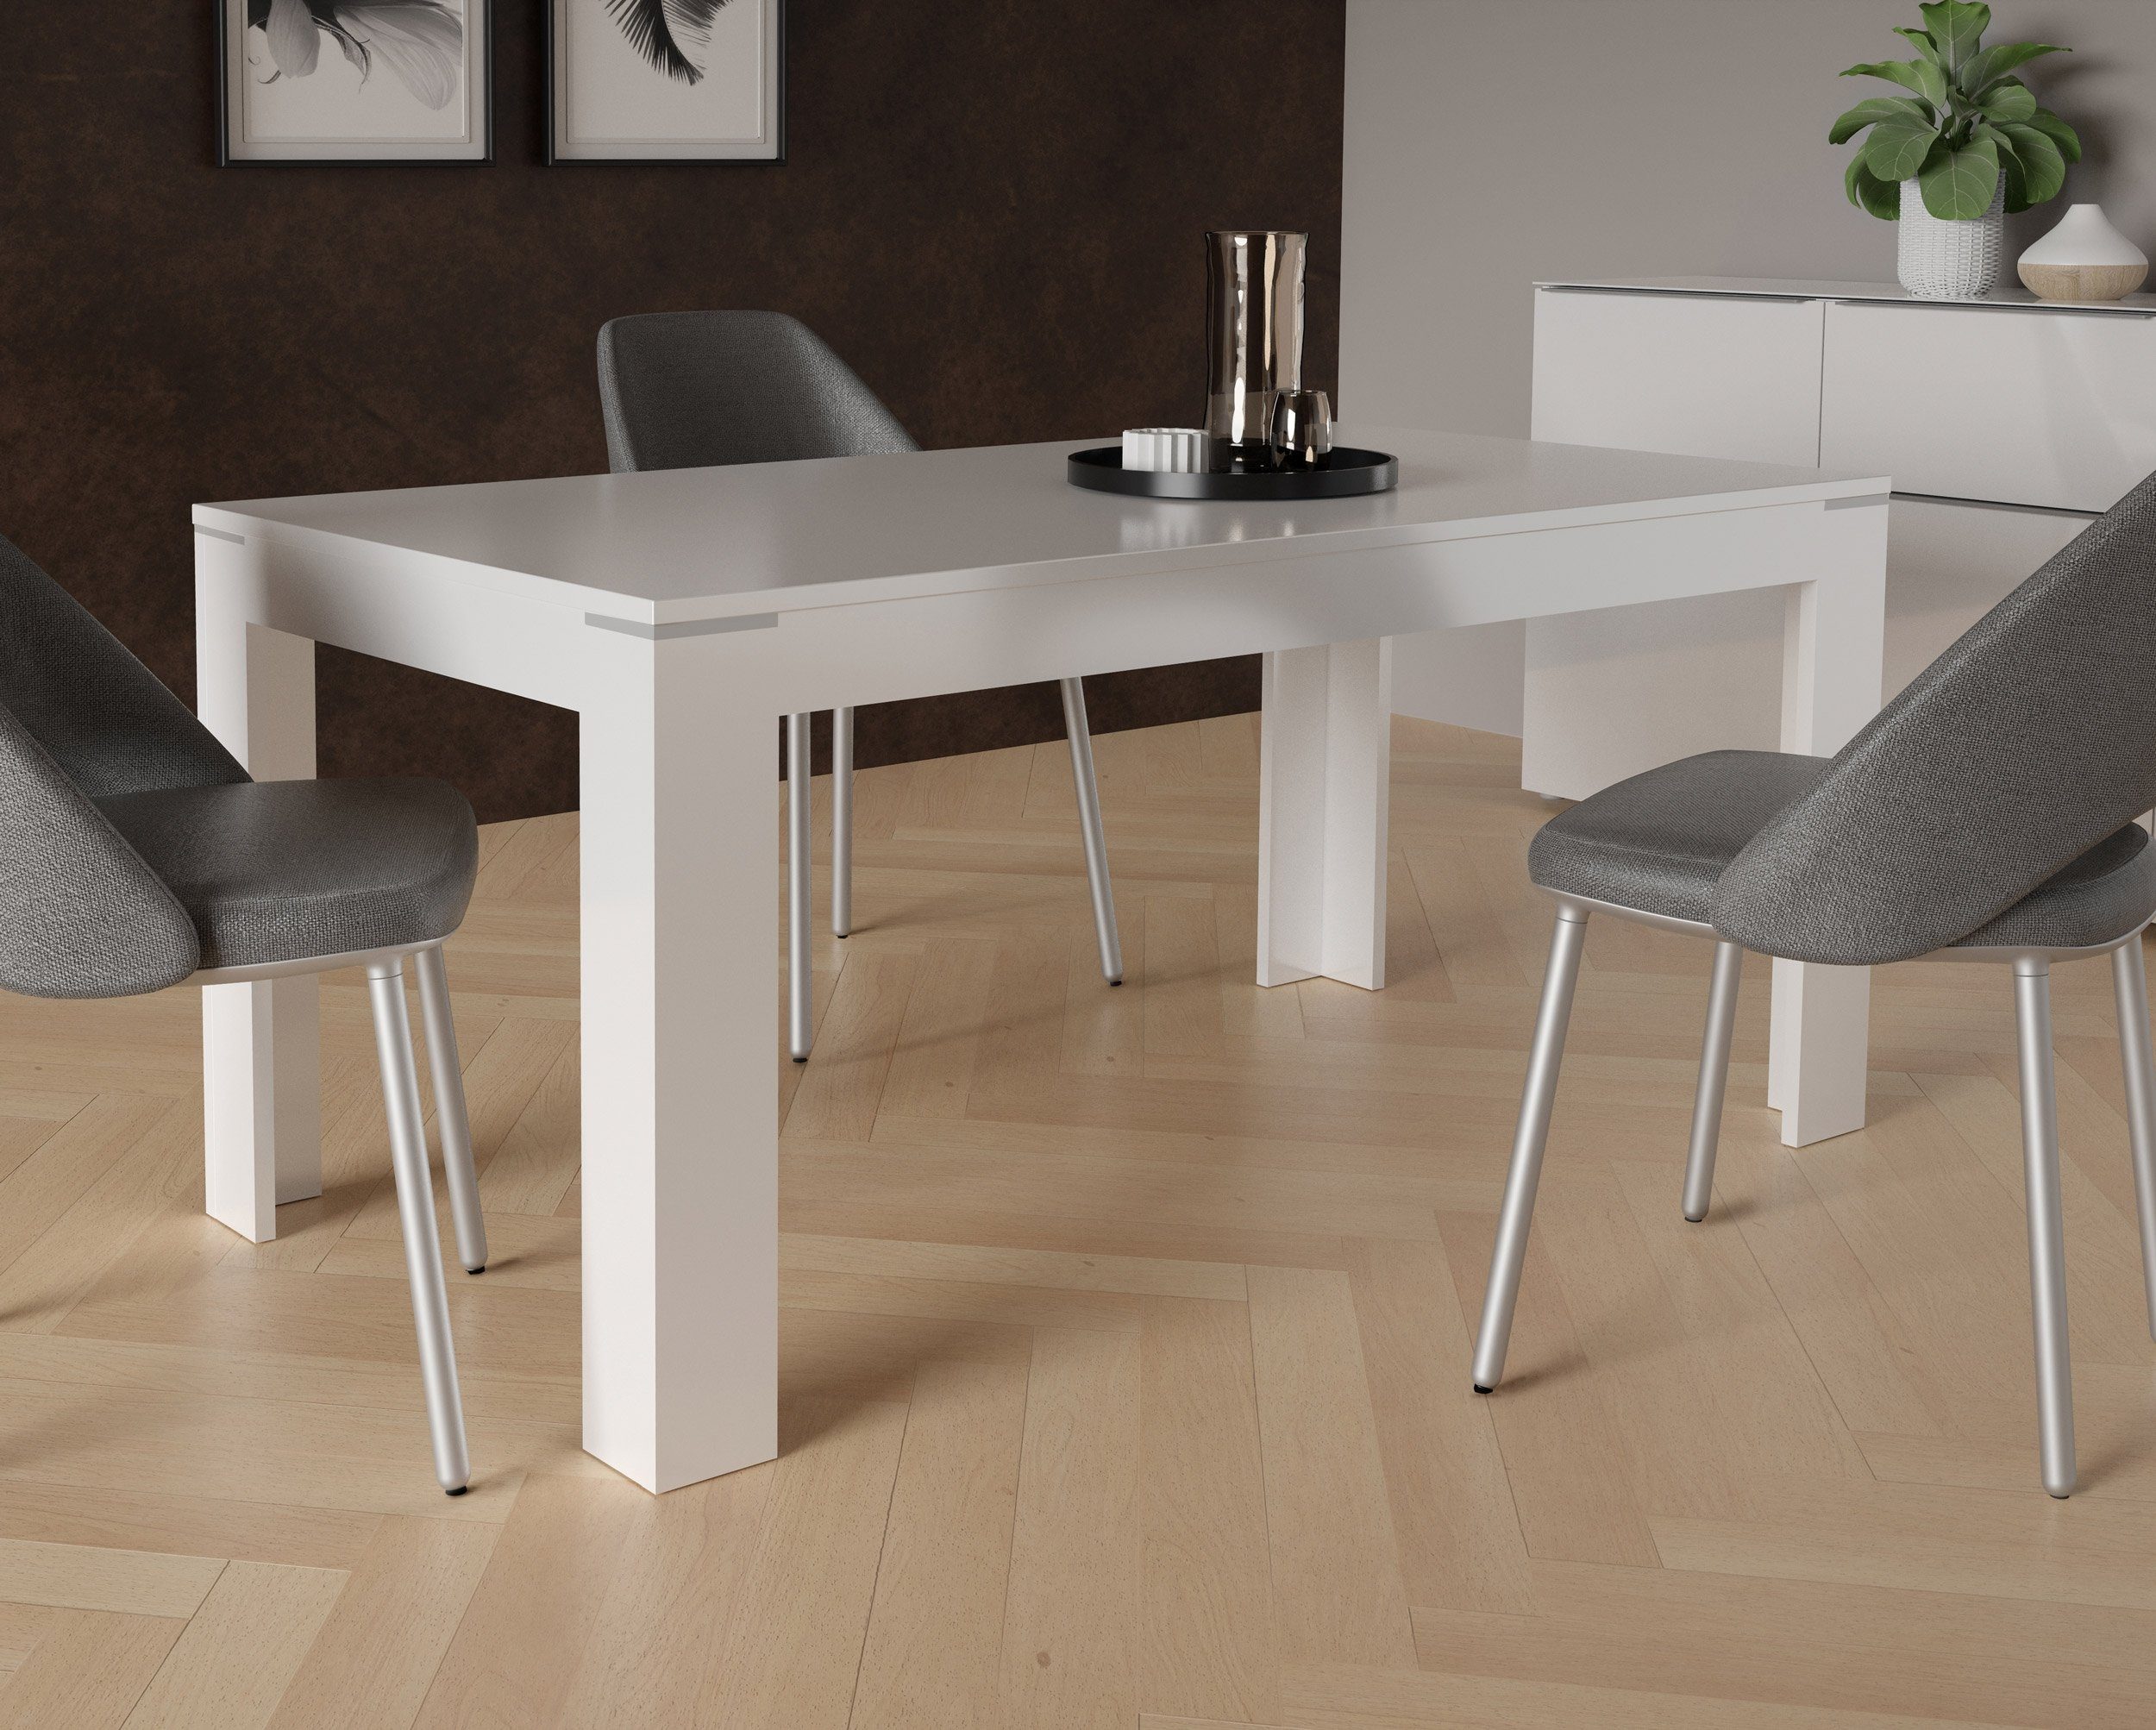 Newroom Esstisch Tisch Violetta, Ausziehbar Esstisch Hochglanz Modern Weiß Esszimmer